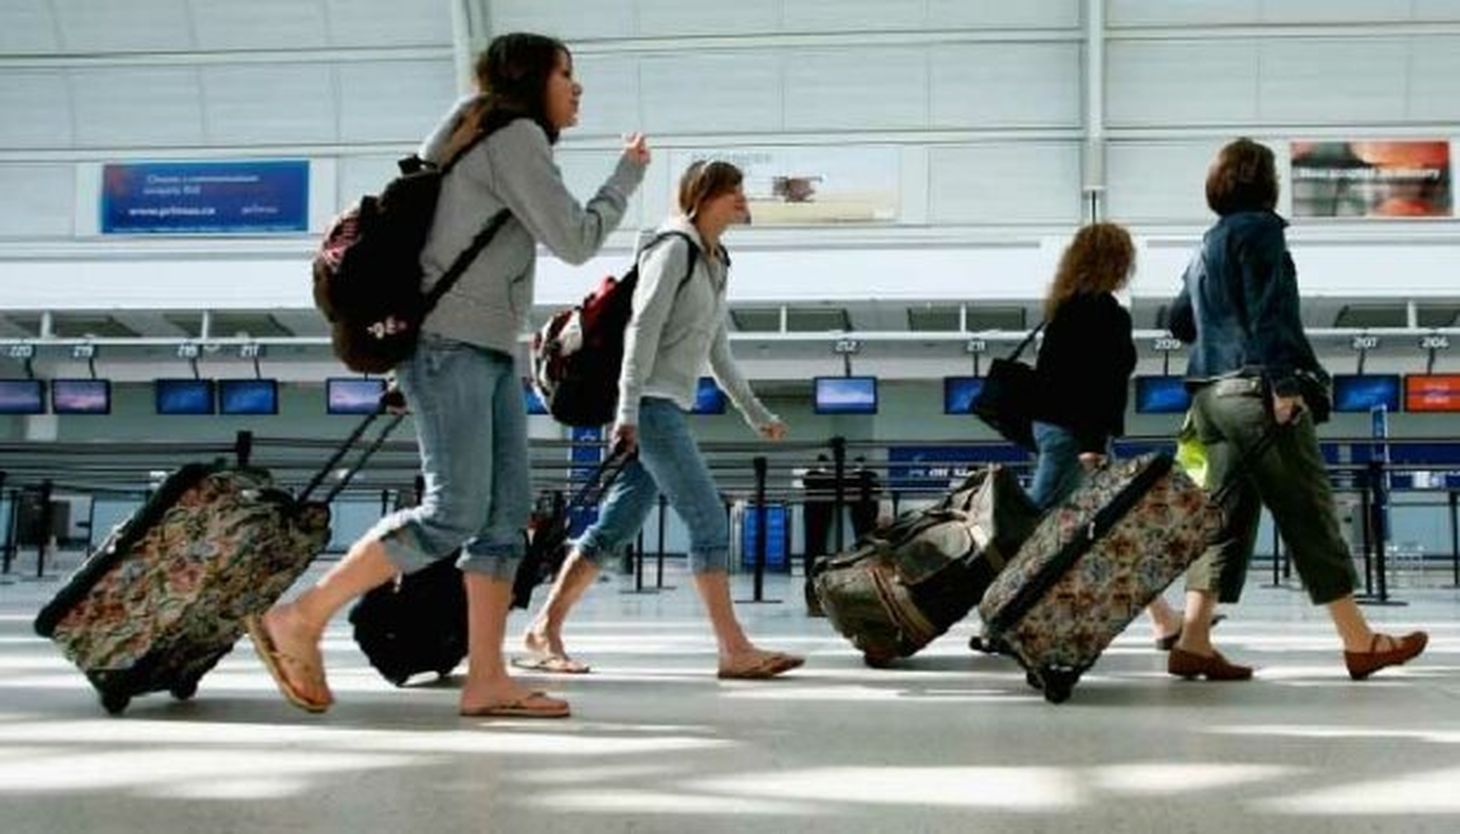 Бежать переехать. Туристы в аэропорту. Люди с чемоданами в аэропорту. Путешественник в аэропорту. Отдыхающие в аэропорту.